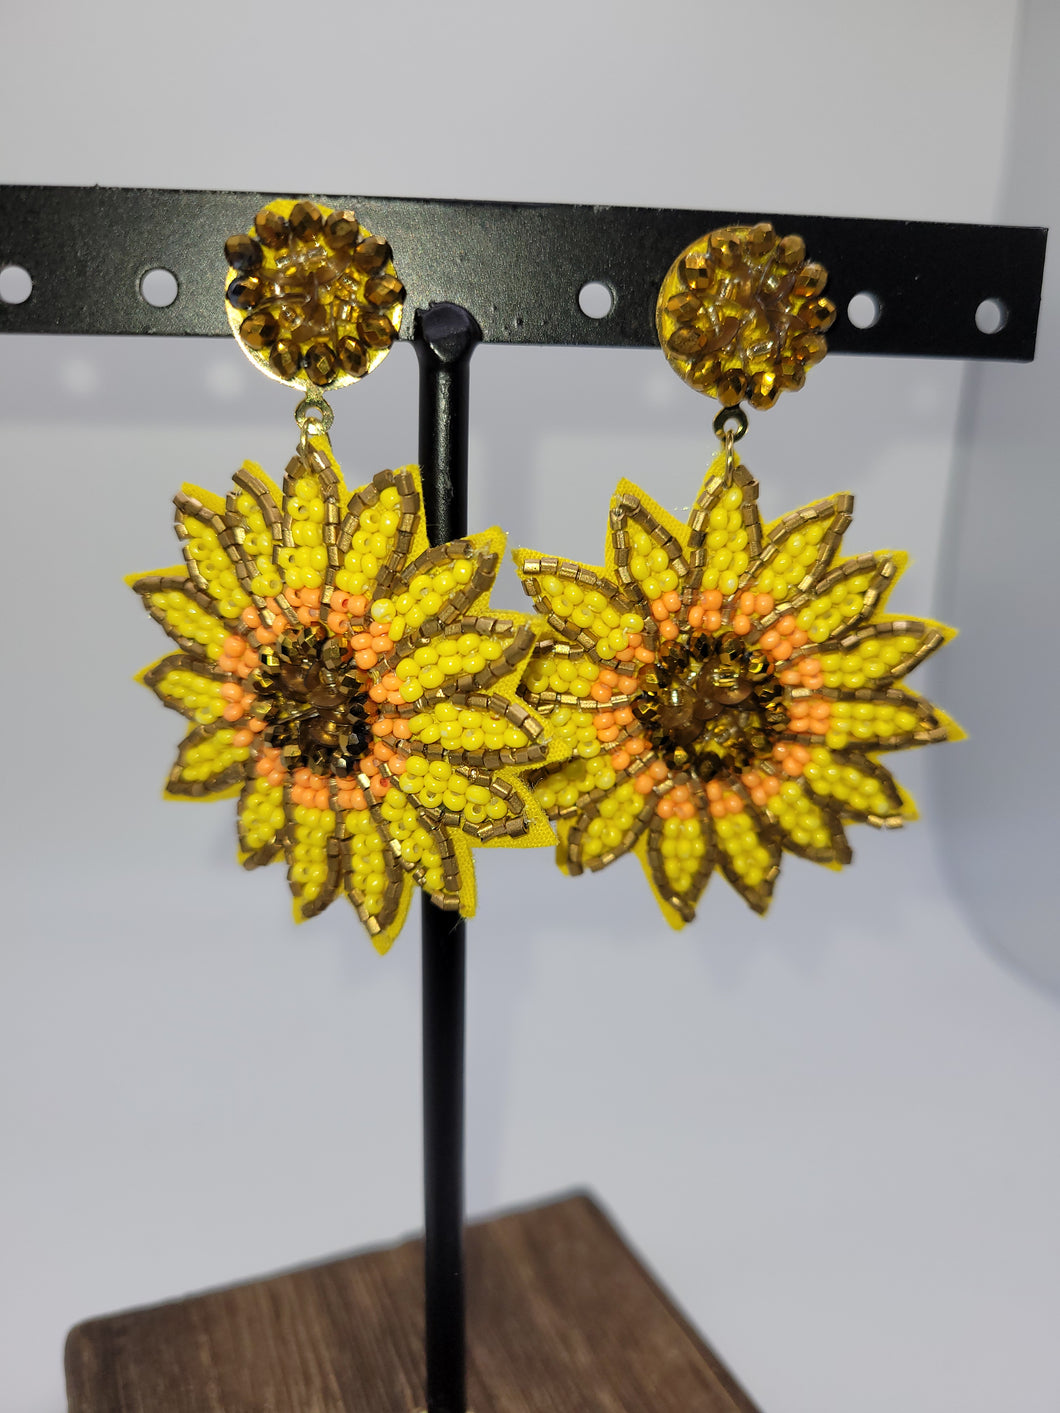 Sunflower Beaded Earrings